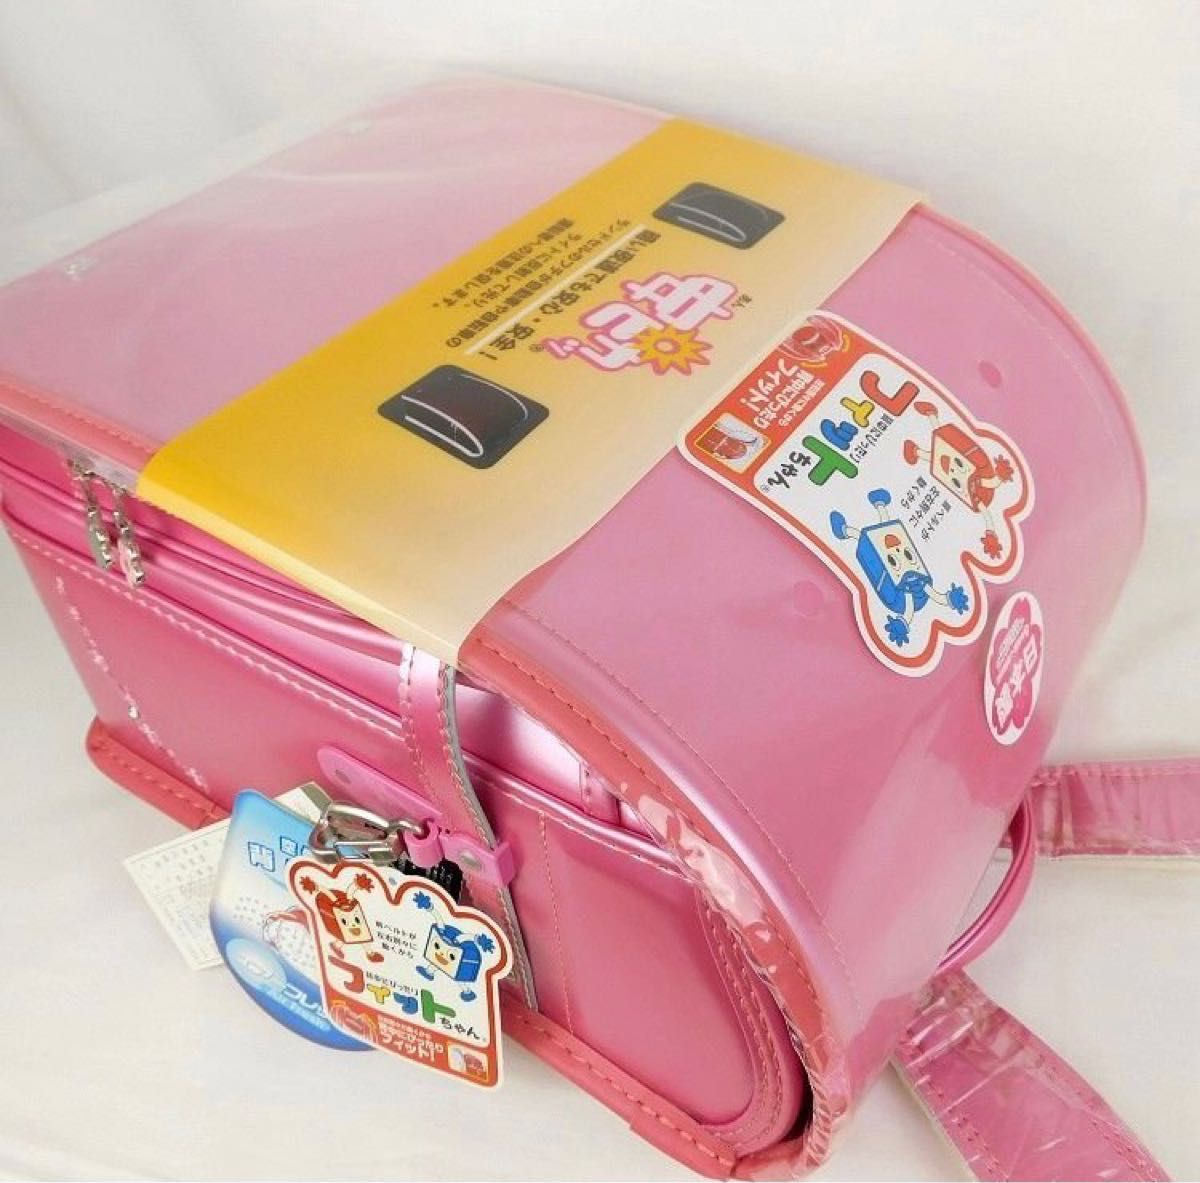 新品 ランドセル フィットちゃん 日本製 ピンク パールピンク フィットちゃんランドセル 高島屋 A4クリアファイル対応